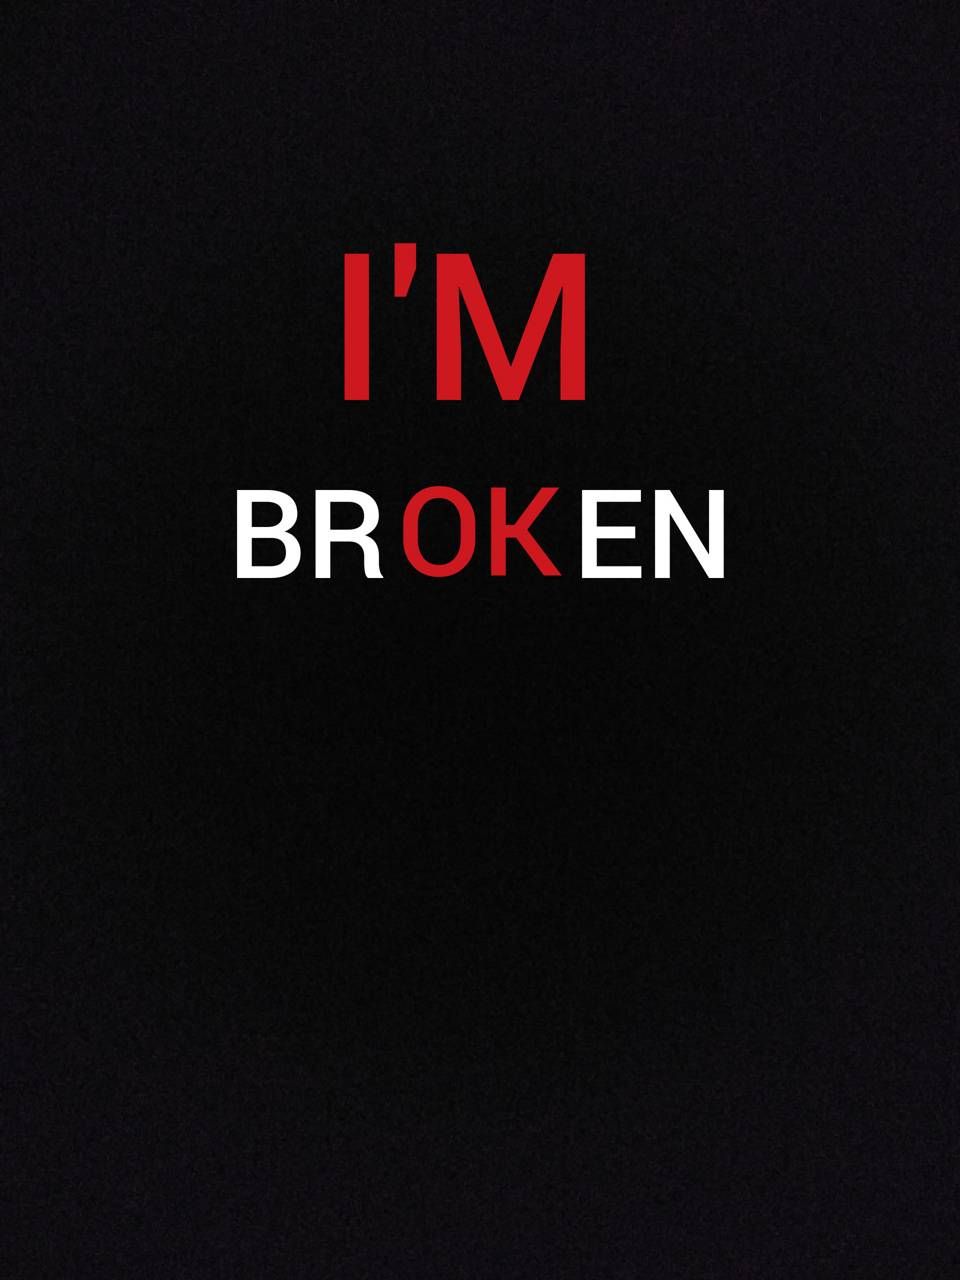 I'm Broken Wallpaper Free I'm Broken Background